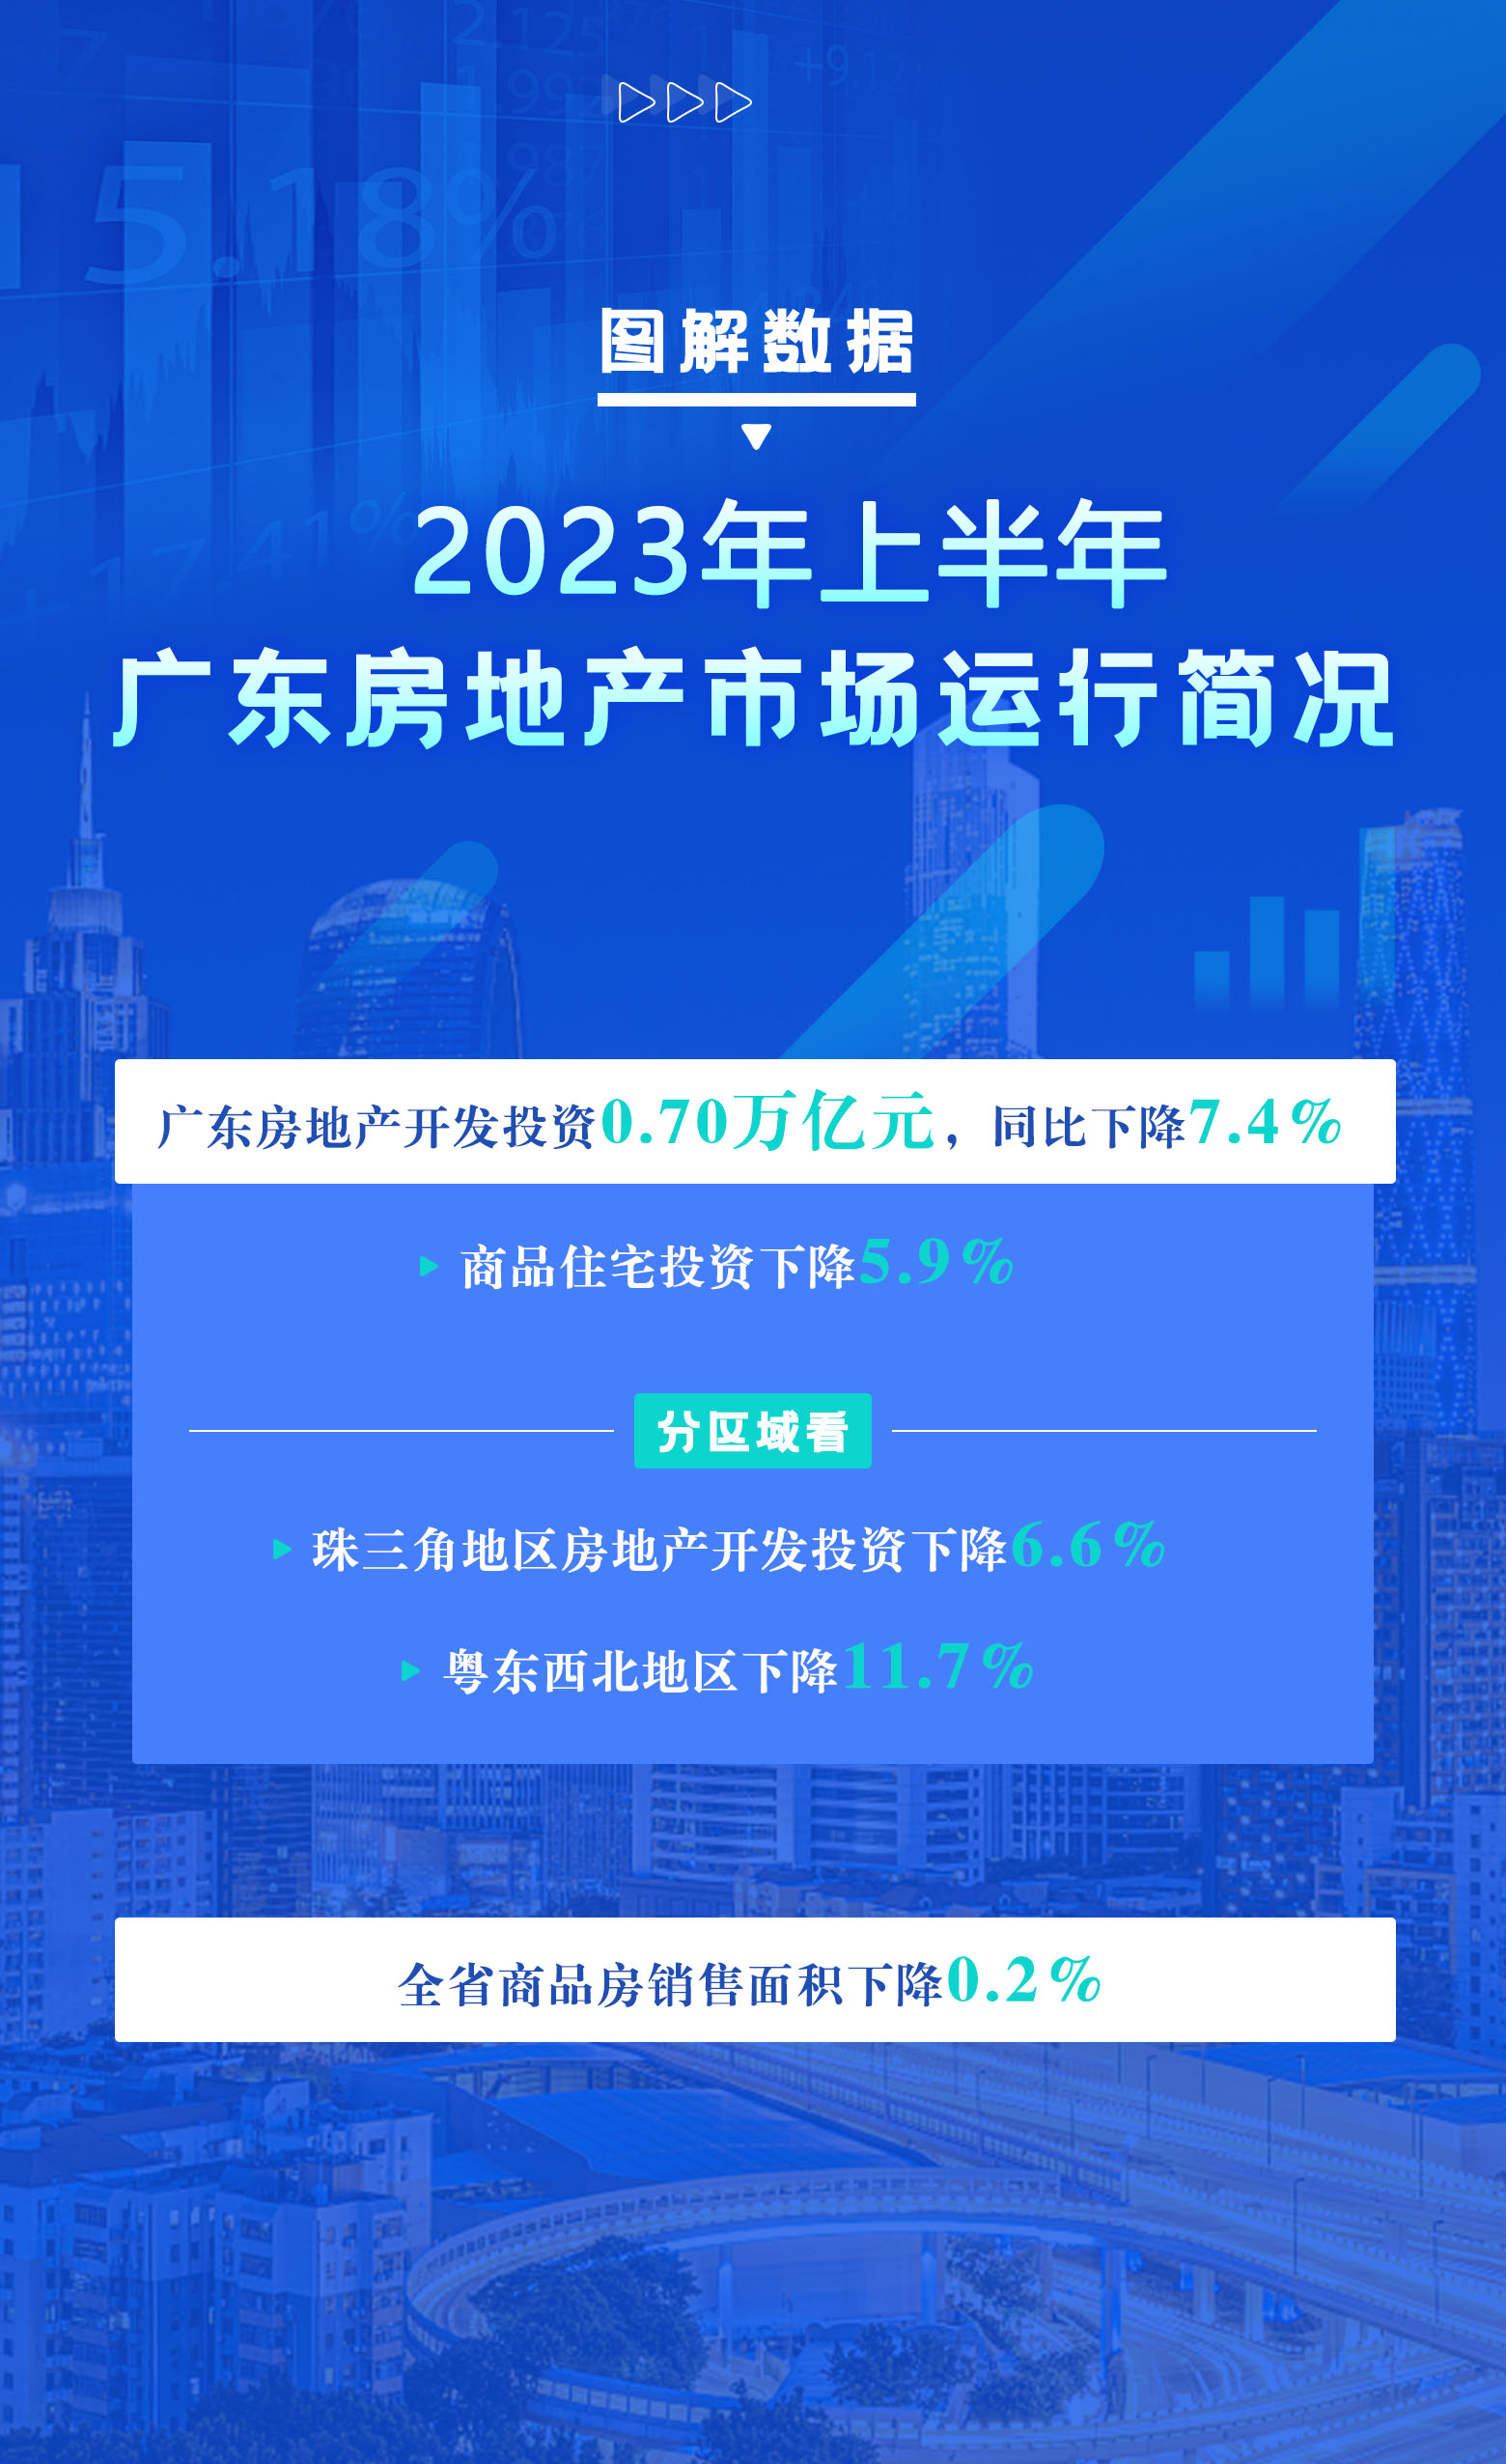 2023年上半年广东房地产市场运行简况.jpg